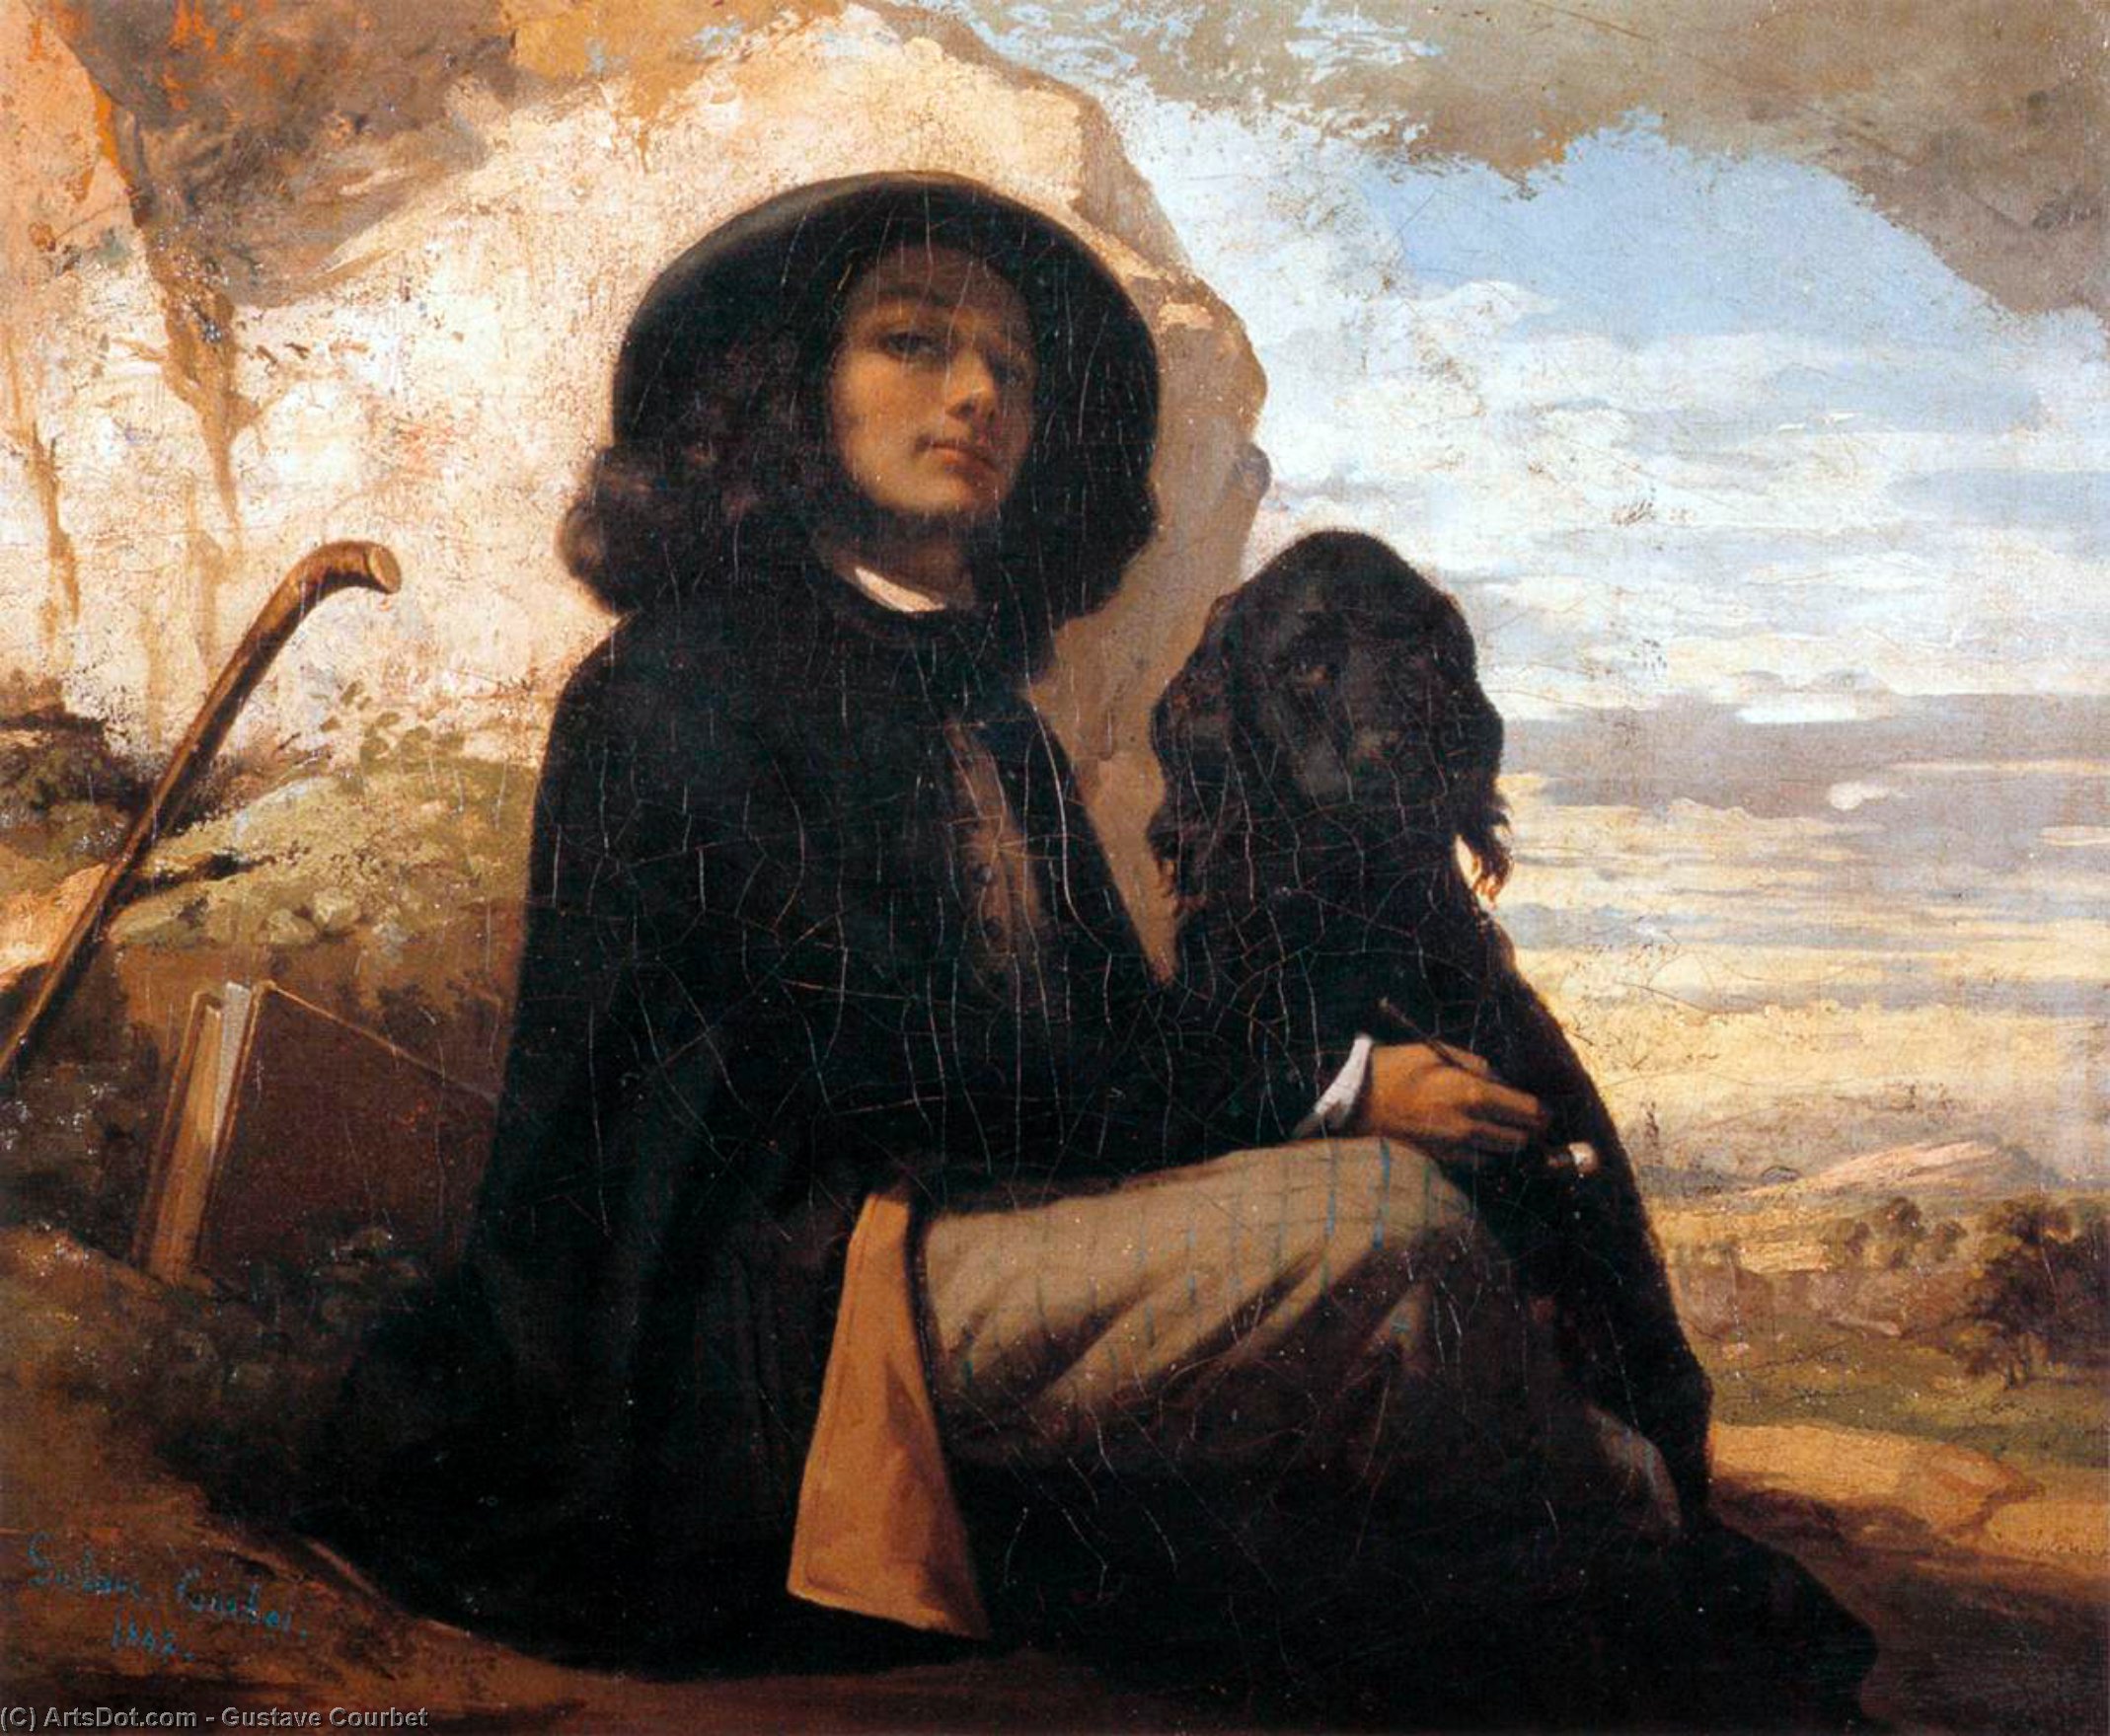 Compre Museu De Reproduções De Arte Auto-retrato com um cão preto, 1841 por Gustave Courbet (1819-1877, France) | ArtsDot.com